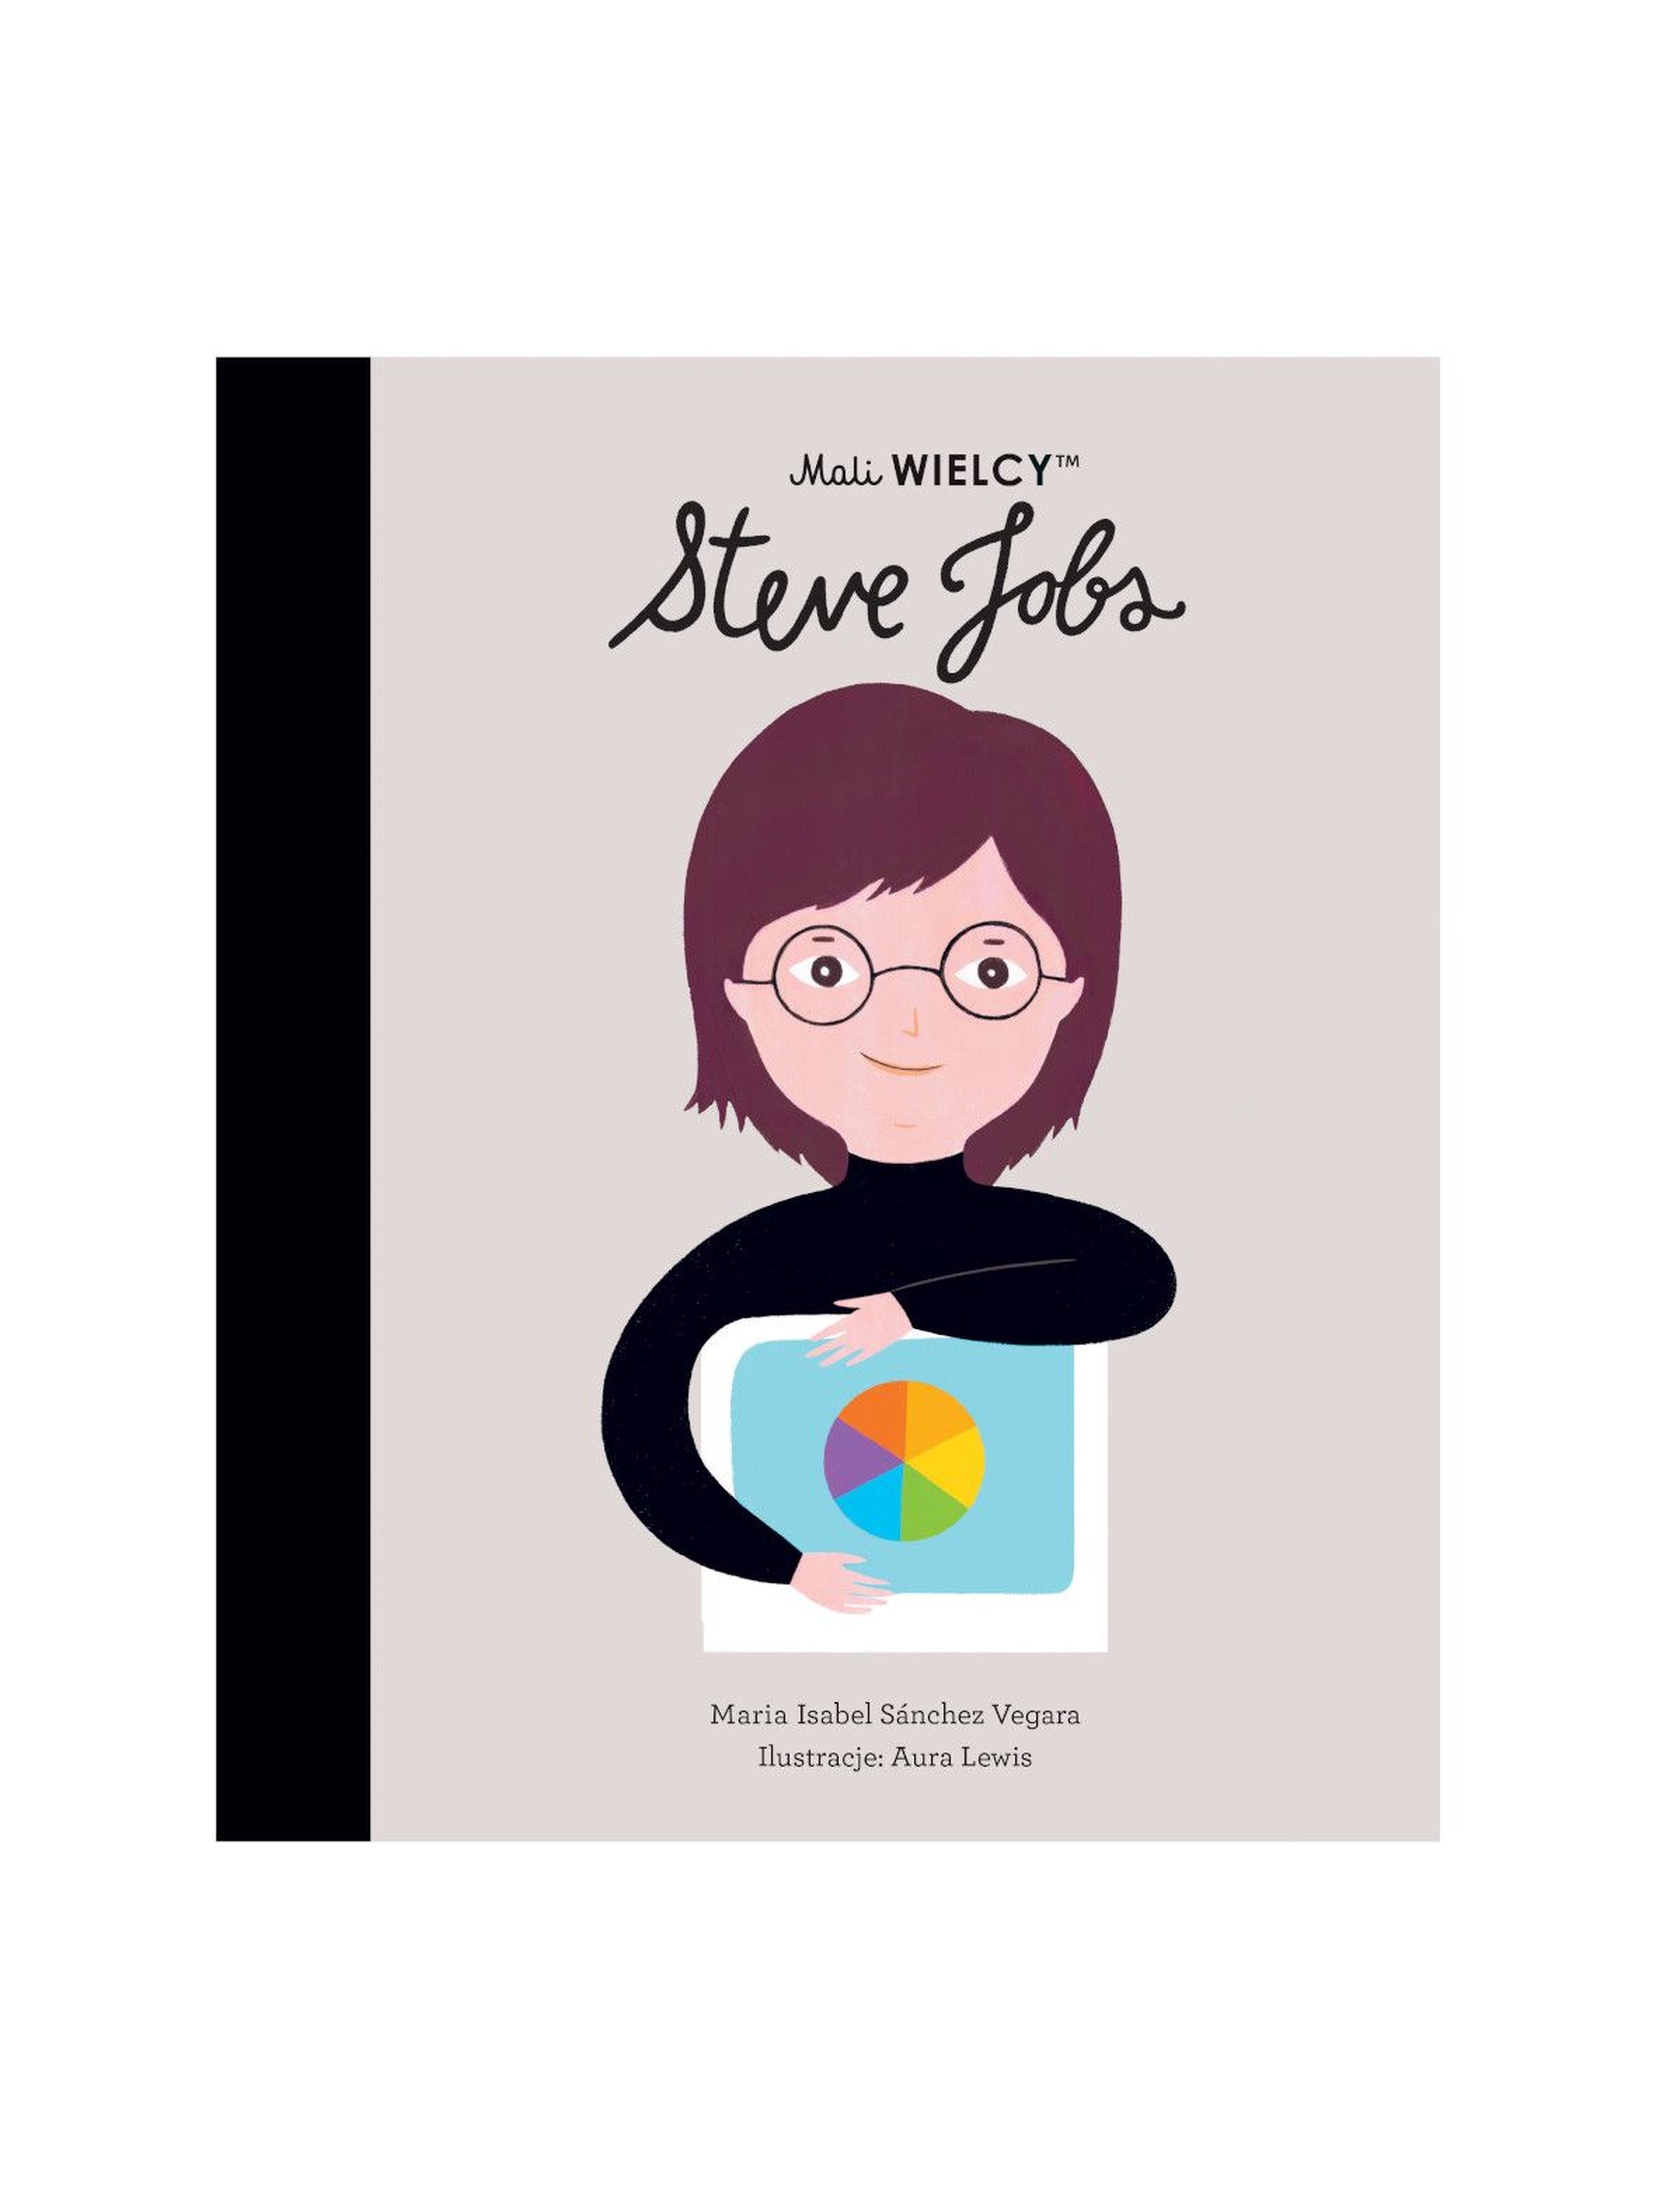 Książka dla dzieci- Mali WIELCY. Steve Jobs wiek 3+